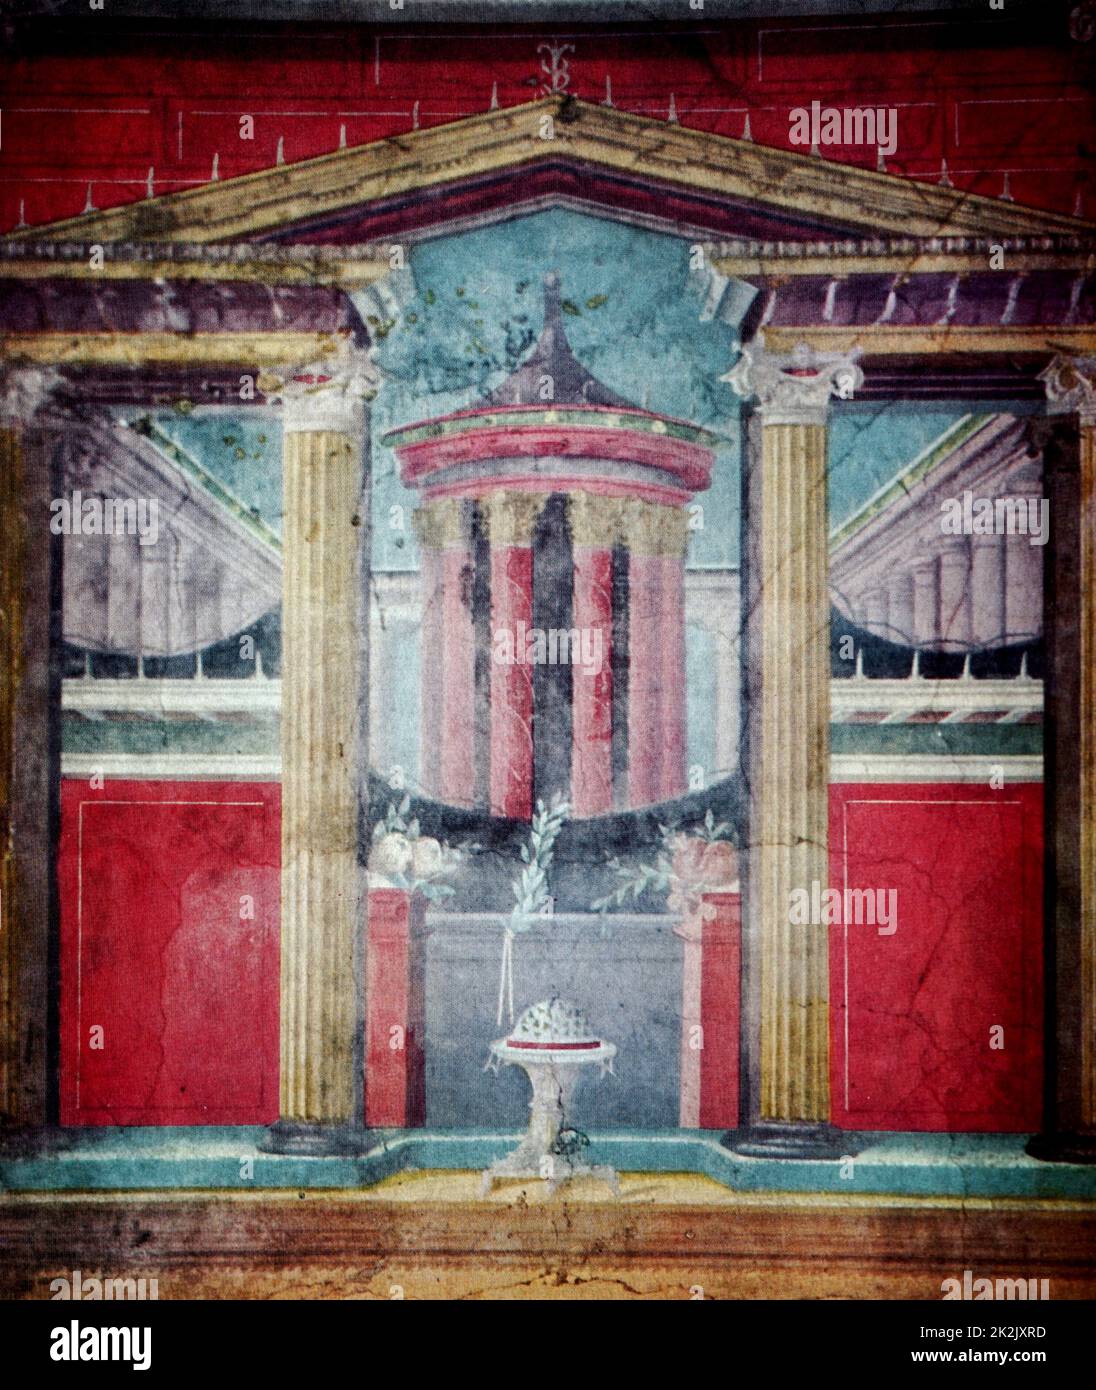 Particolare di un affresco raffigurante antica architettura romana. Datato xii secolo Foto Stock